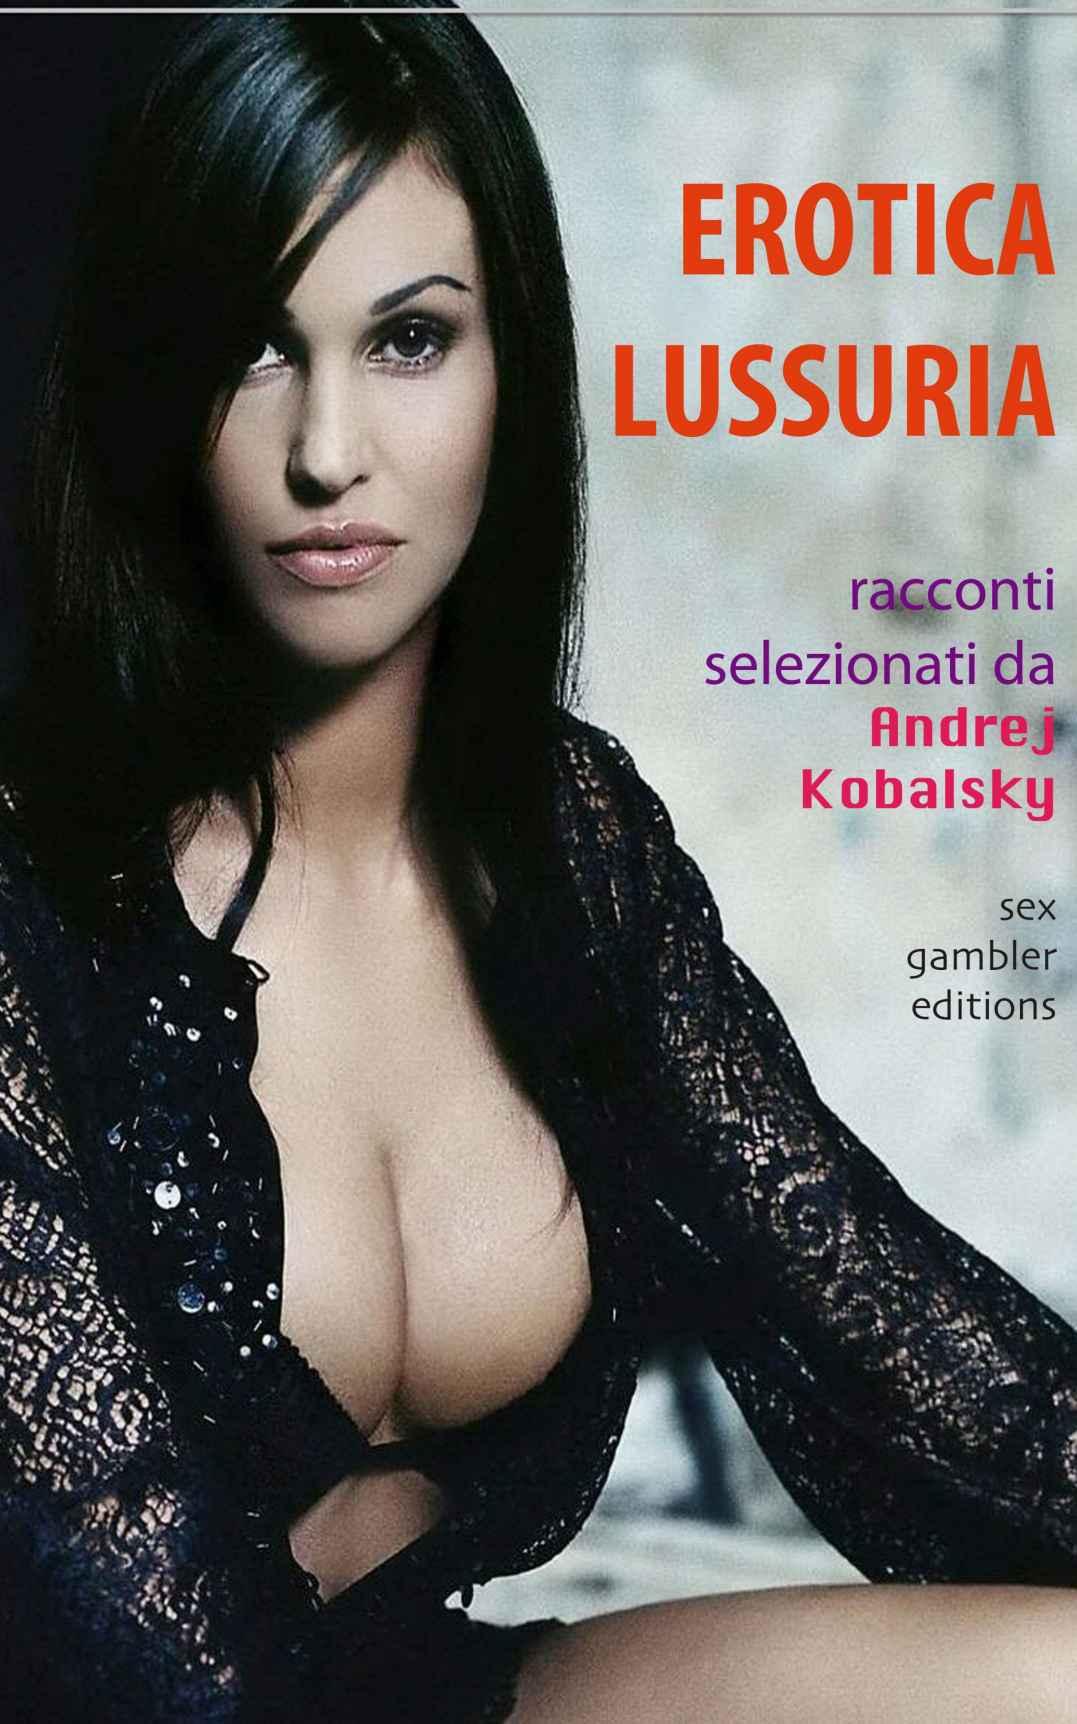 EROTICA LUSSURIA - RACCONTI EROTICI di sesso e perversioni (Italian Edition) by Kobalsky Andrej